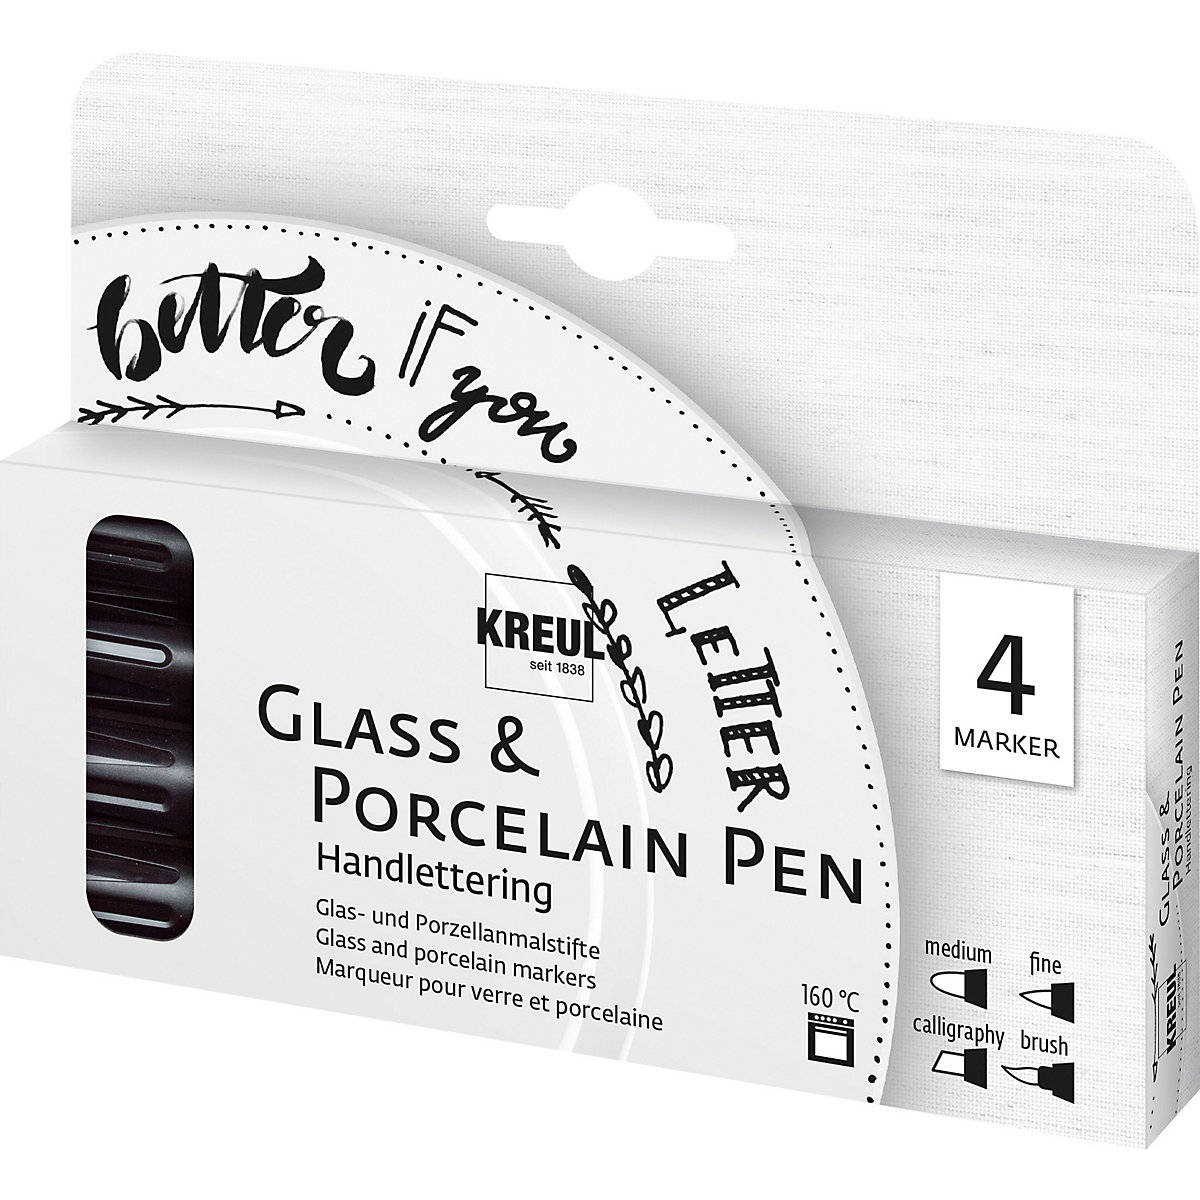 KREUL Glass & Porcelain Pen 4er Set Handlettering